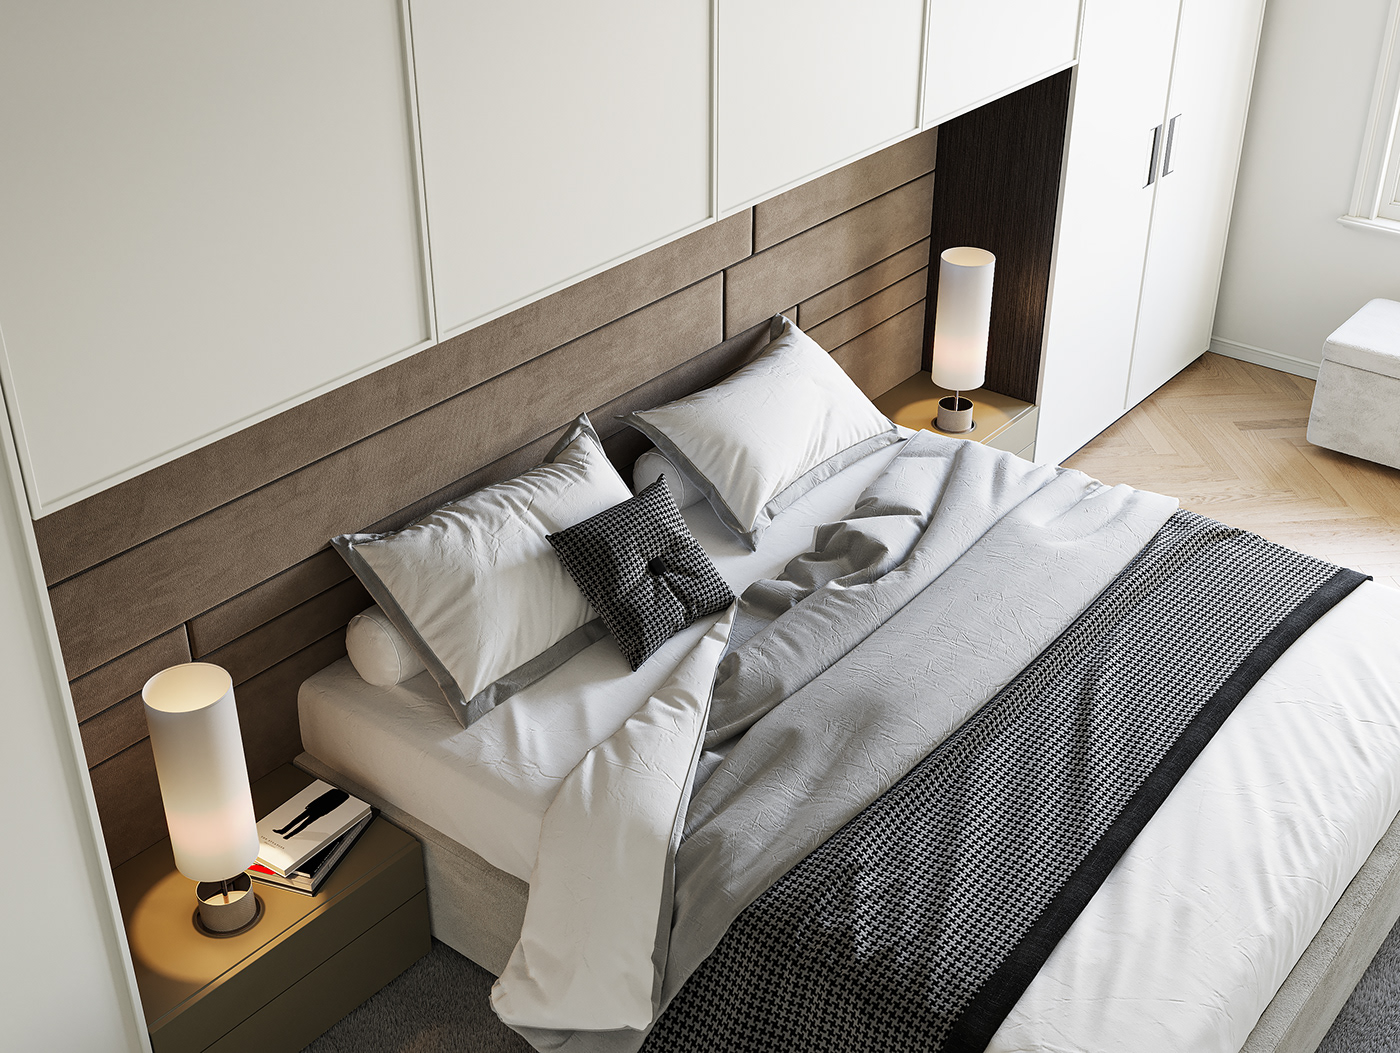 bedroom design corridor design visualization Render modern 3ds max CGI interior design  architecture corona